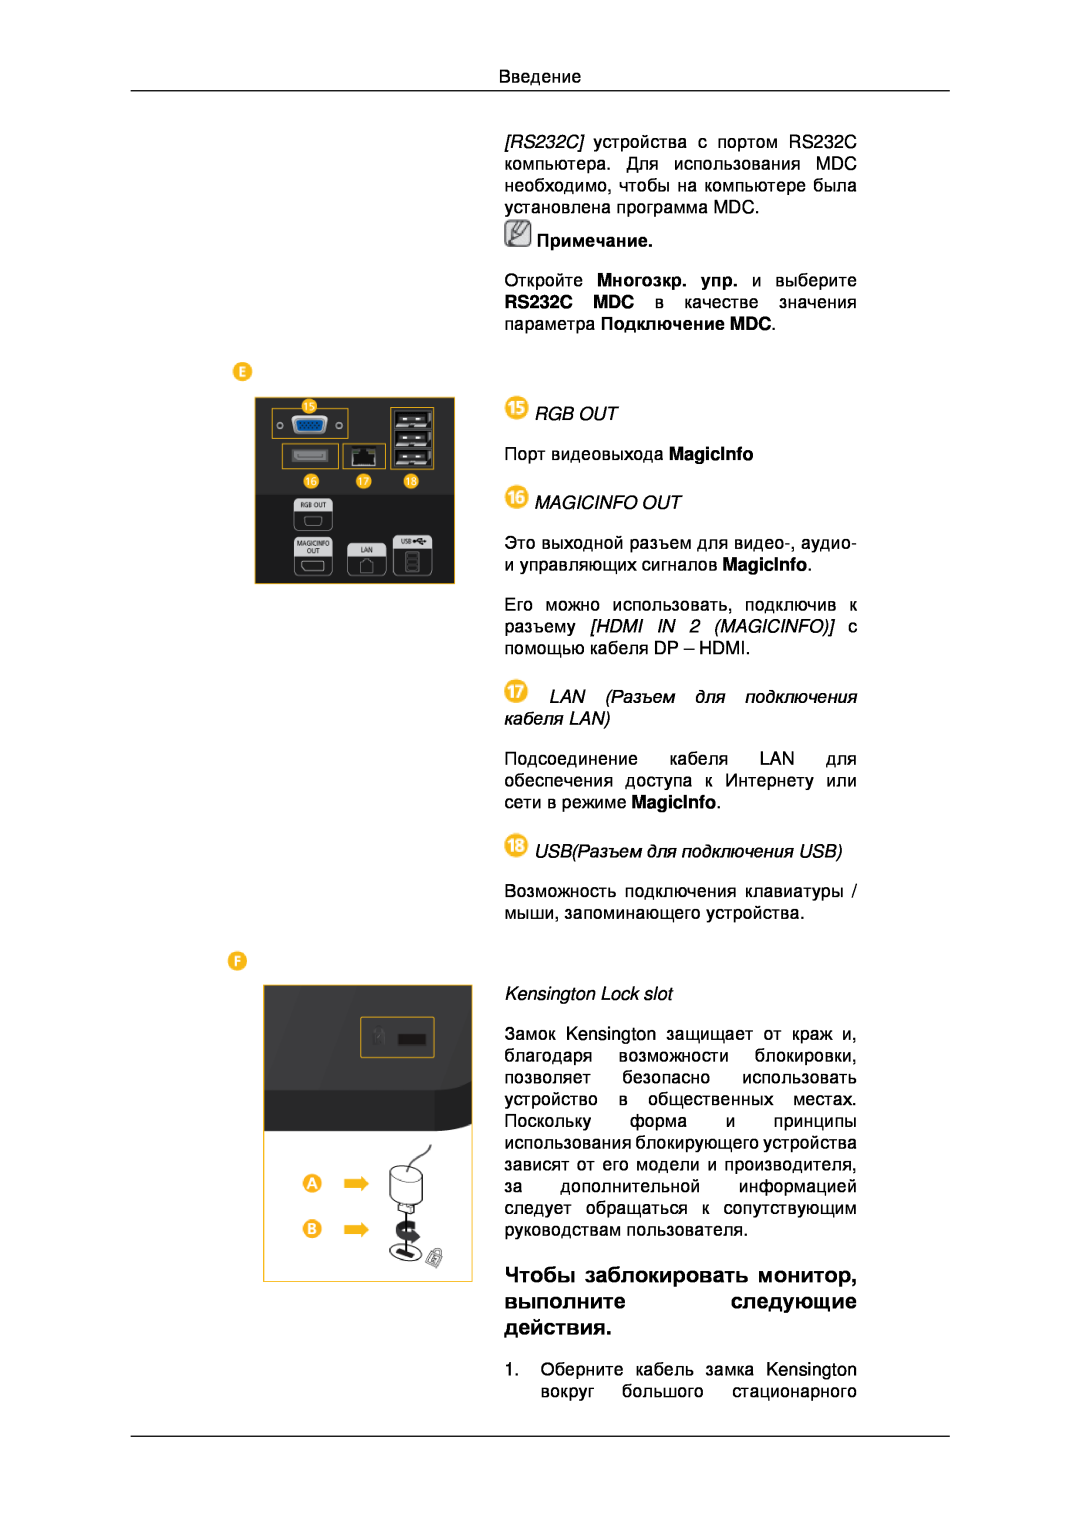 Samsung LH32CRTMBC/EN manual Чтобы заблокировать монитор выполнитеследующие действия, Rgb Out, Magicinfo Out, Примечание 